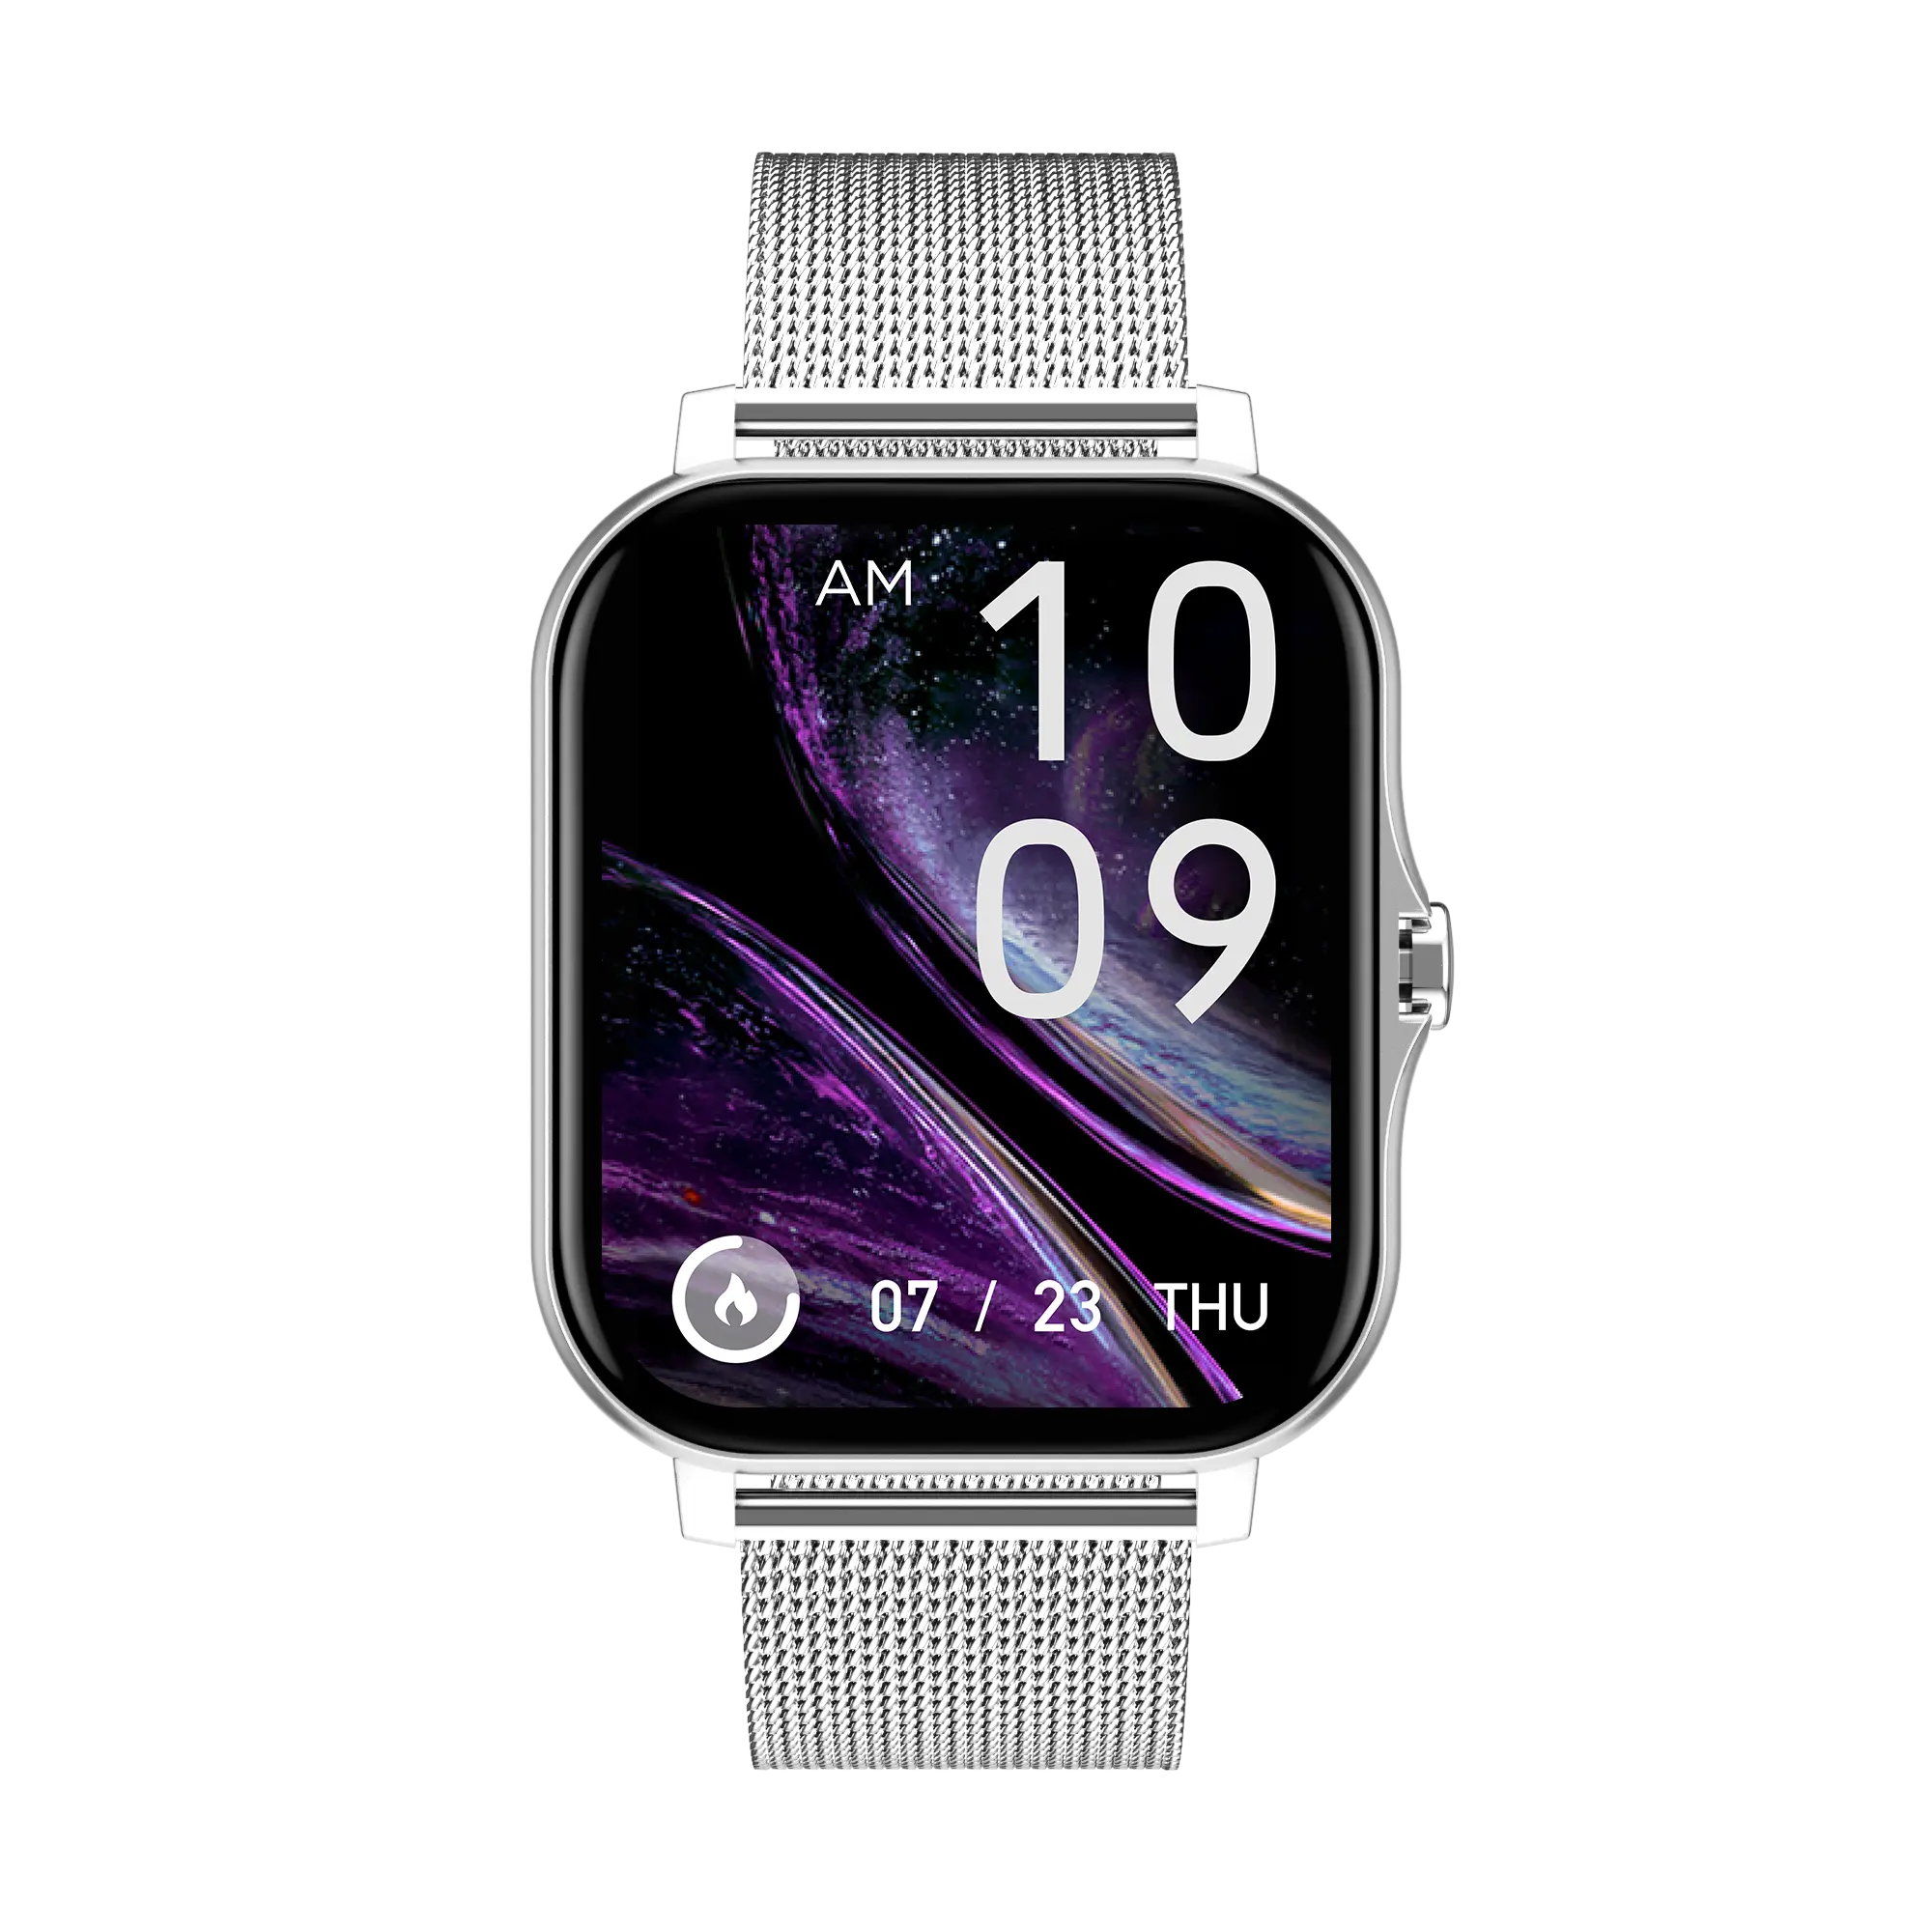 Jam tangan pintar Android iOS, jam tangan pintar baru untuk ponsel Android iOS-layar sentuh penuh warna, pelacak kebugaran dengan Monitor denyut jantung, beberapa mode olahraga